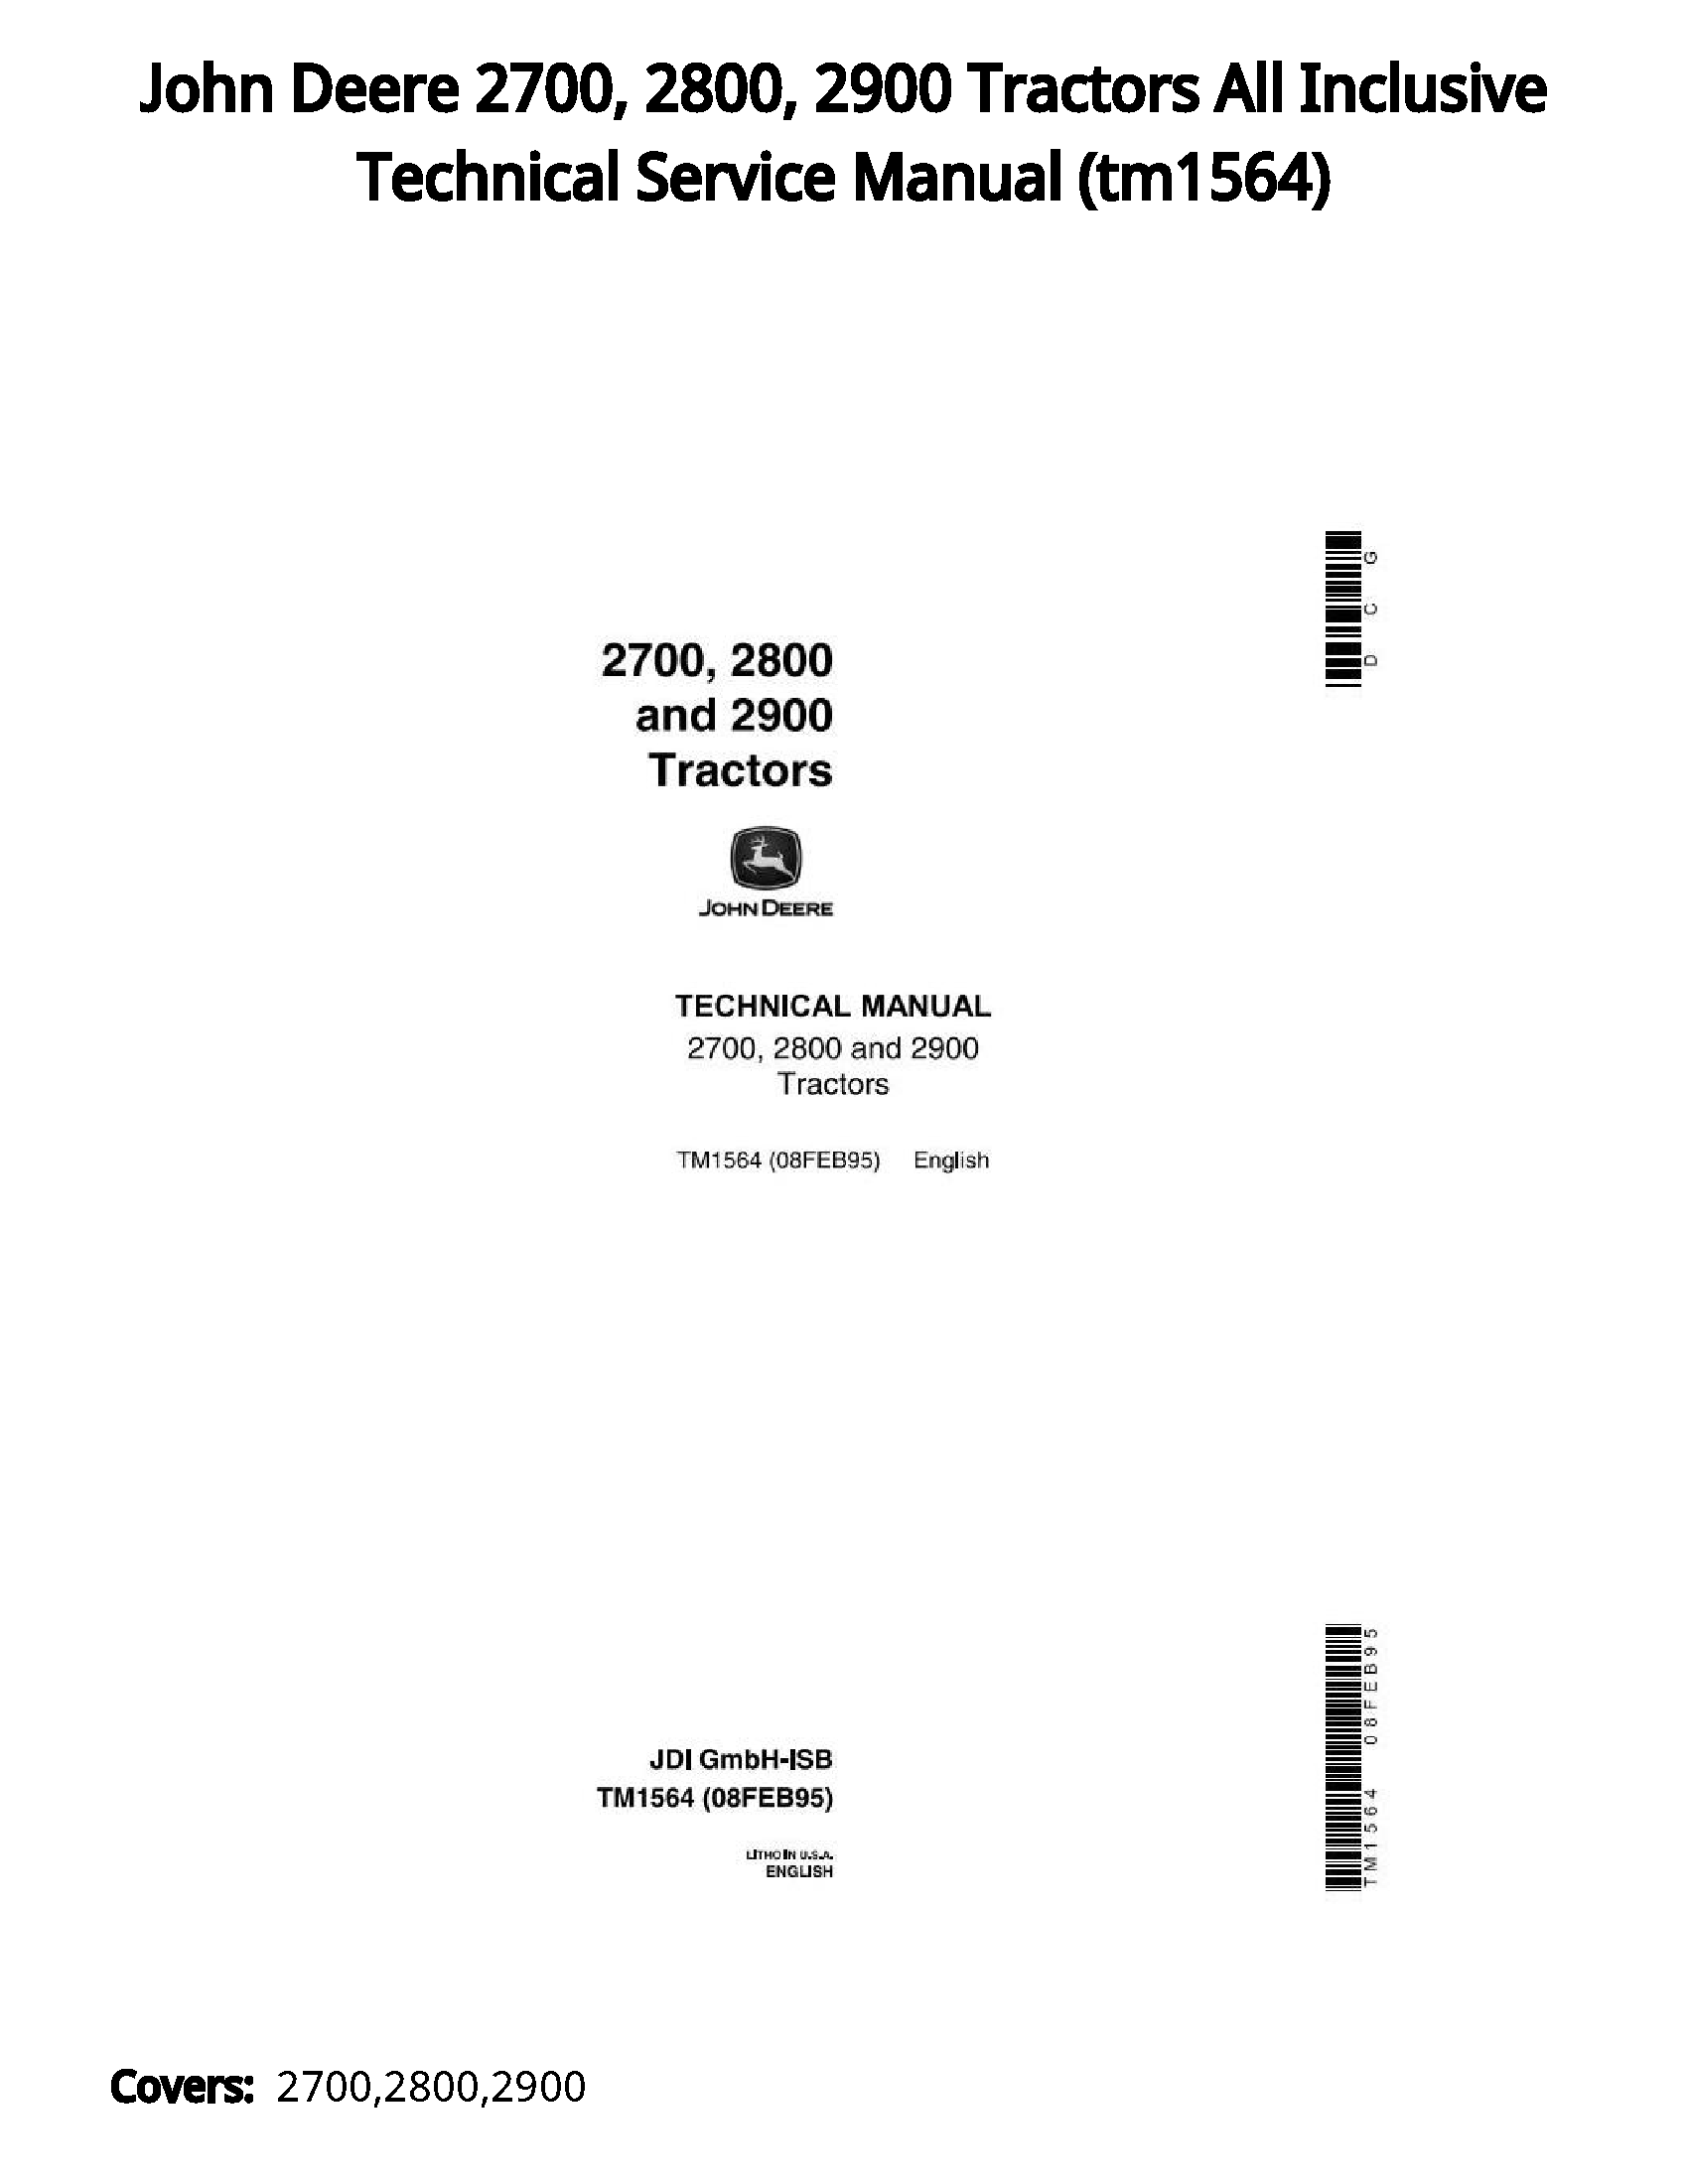 John Deere 2700  2800  2900 Tractors All Inclusive Technical Service Manual - tm1564